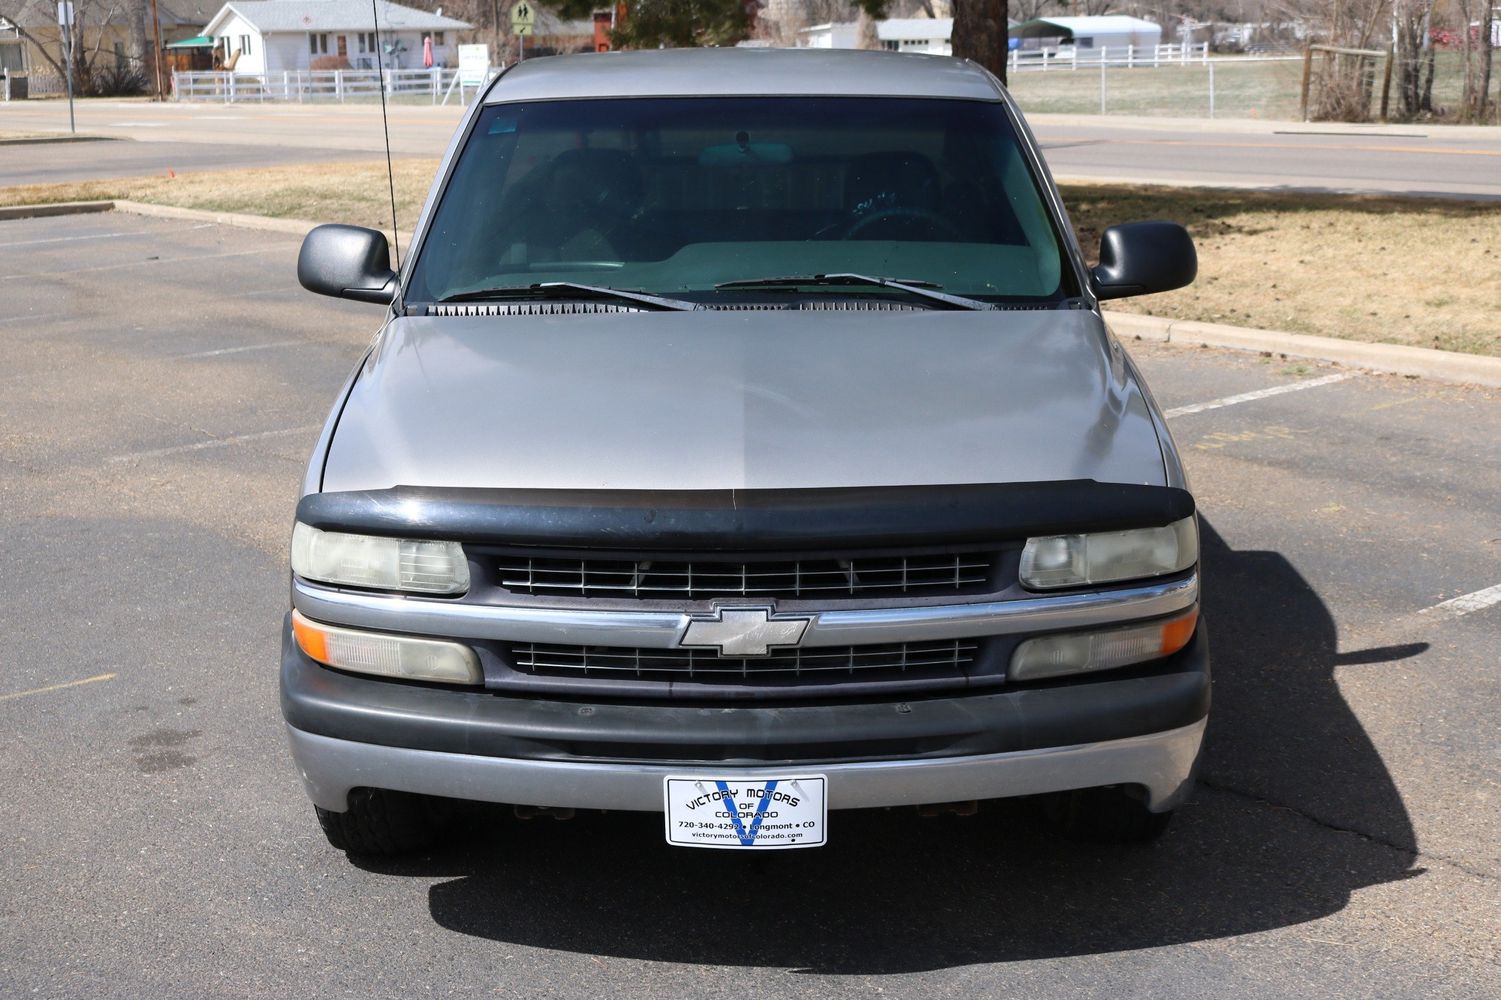 2000 Chevrolet Silverado 1500 | Victory Motors of Colorado 2000 Chevrolet Silverado 1500 4wd Front Differential Not Locking In